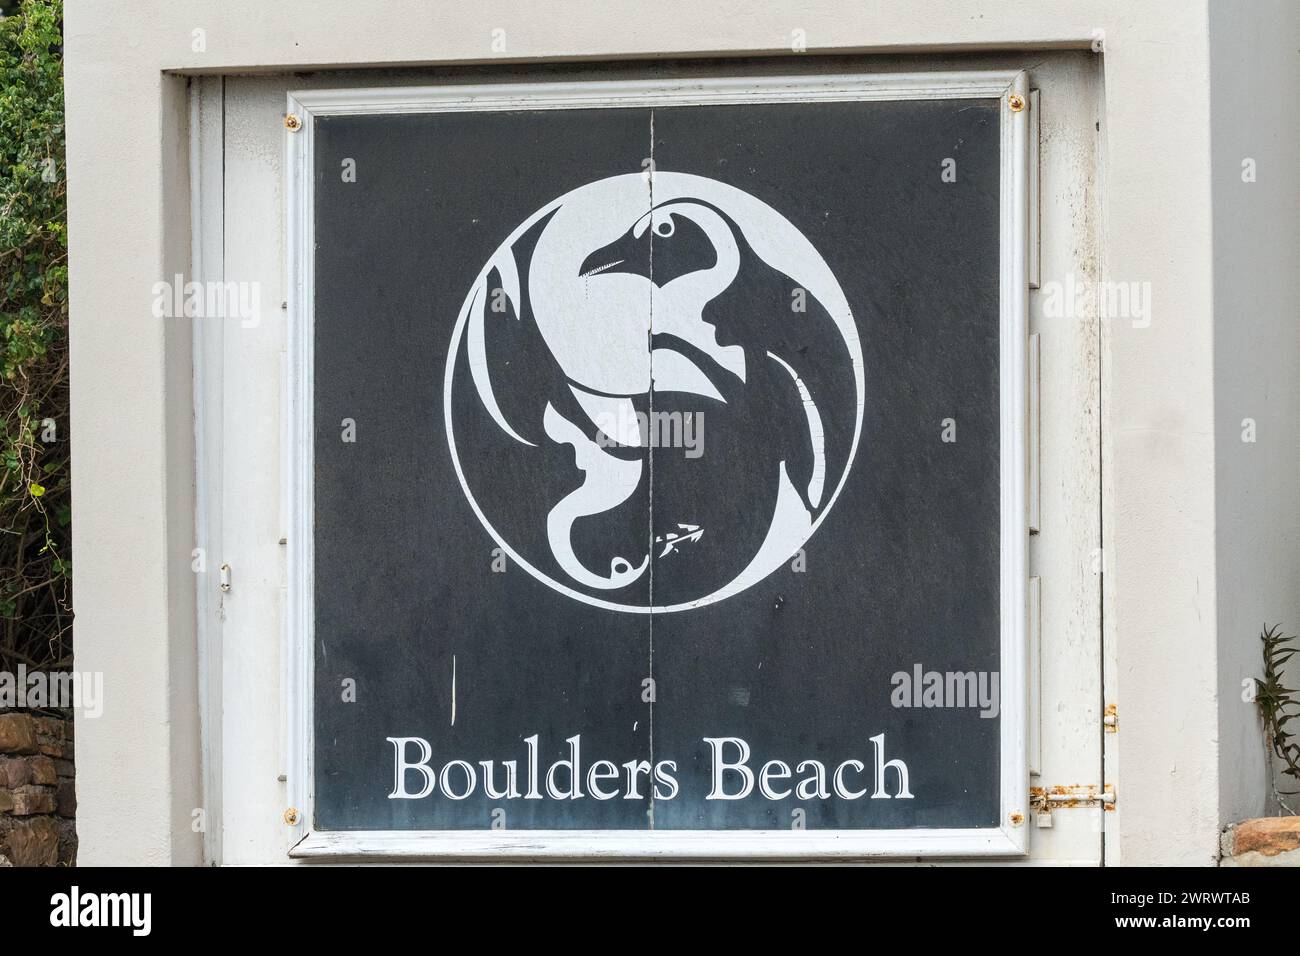 Insegna Boulders Beach o segnaletica con pinguini su sfondo bianco e nero nel Capo Occidentale, Sud Africa Concept Travel and Tourism Foto Stock